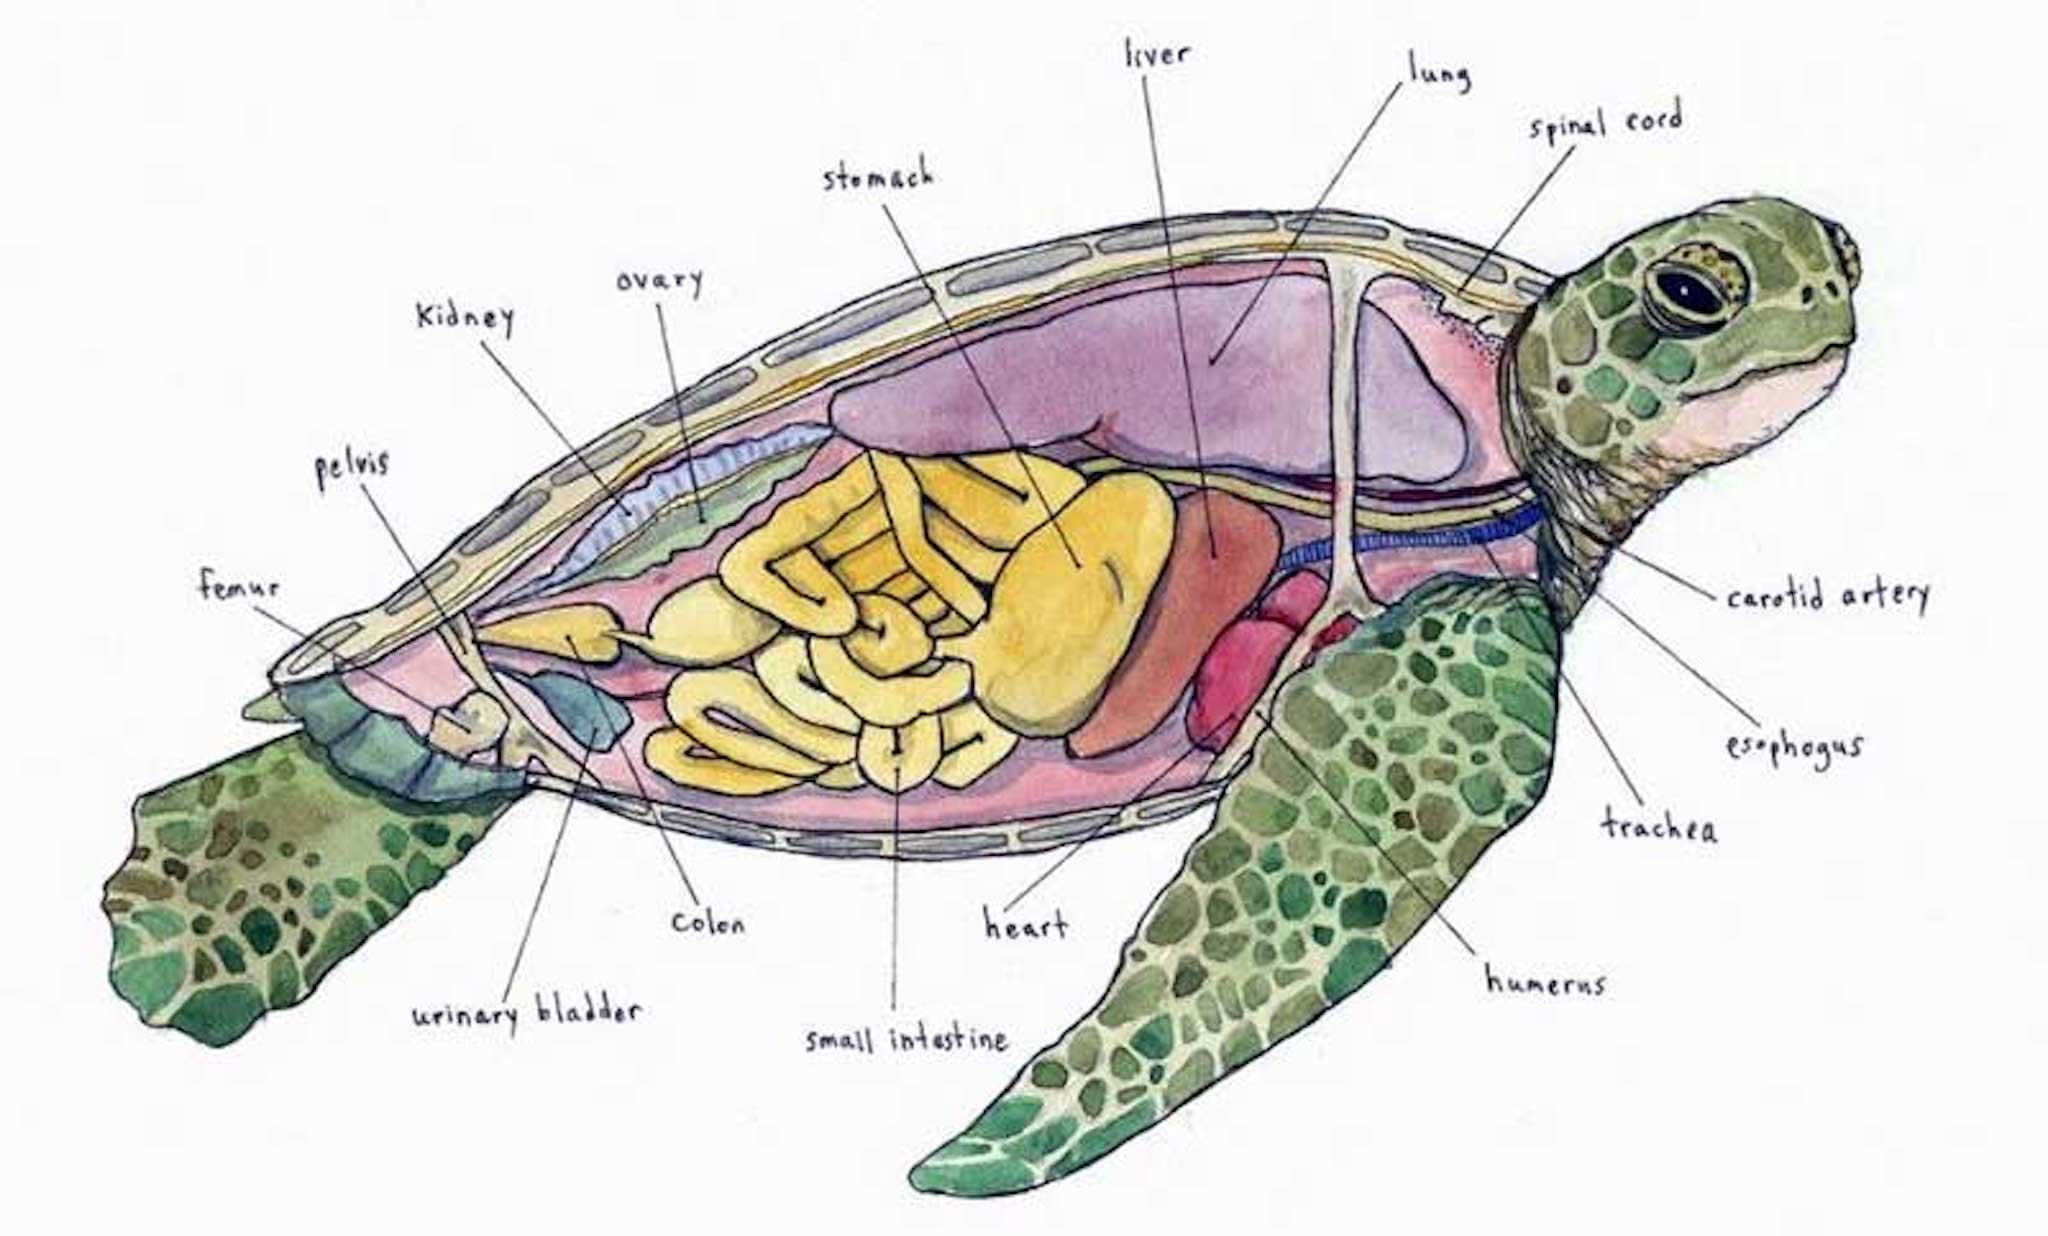 Mai rùa là biểu tượng tuyệt vời của sự bền vững và trường tồn. Hãy nhìn vào hình ảnh này để cảm nhận được sự tự tin và bình an tràn đầy từ loài rùa.